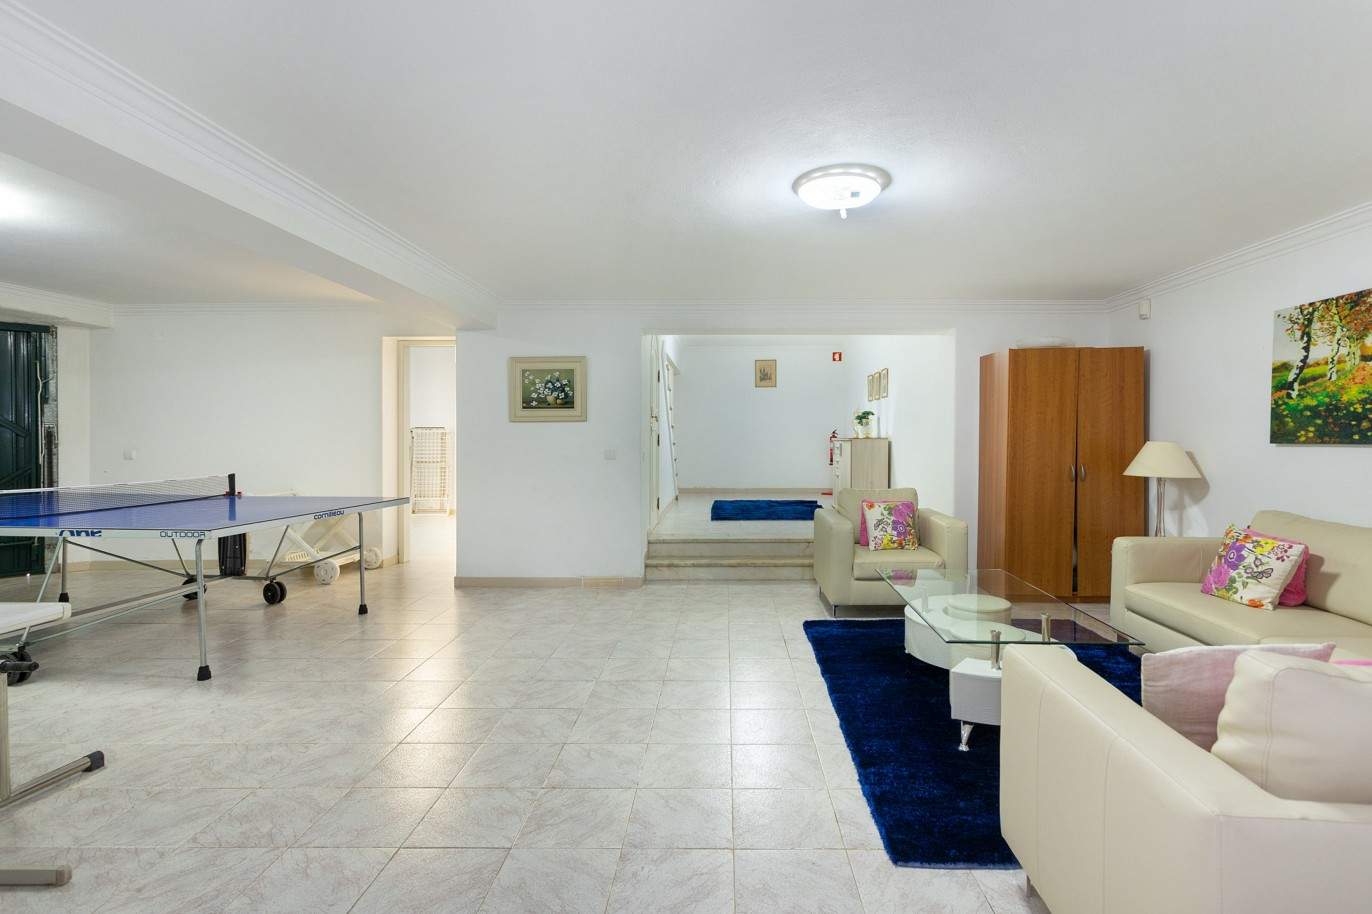 5 Bedroom Villa with swimming pool, for sale in Vilamoura, Algarve_212559